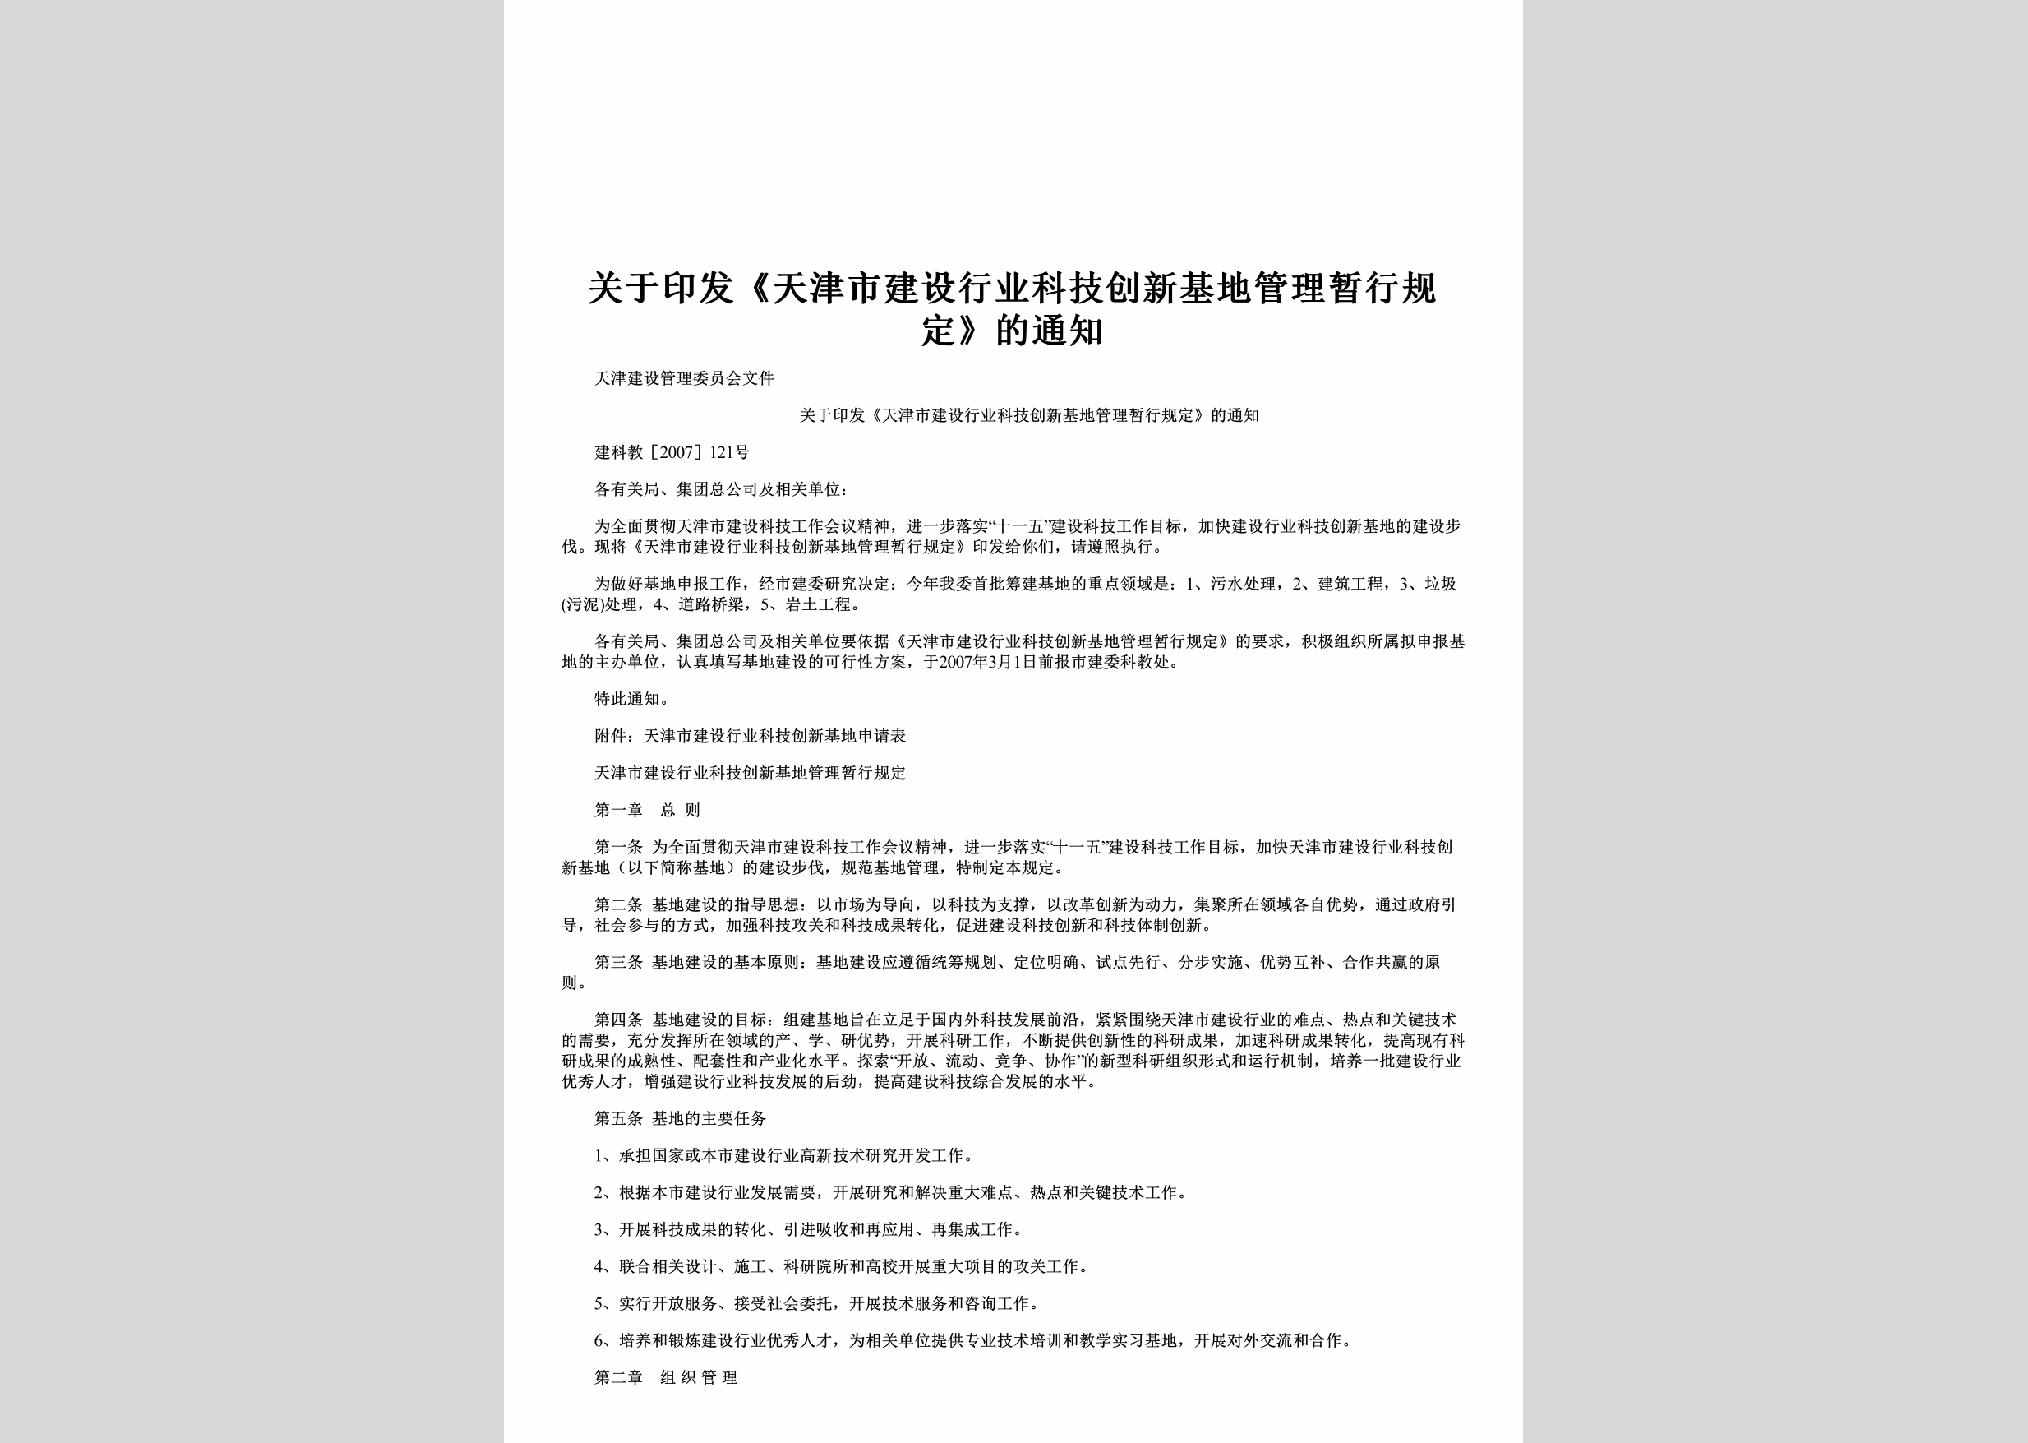 建科教[2007]121号：关于印发《天津市建设行业科技创新基地管理暂行规定》的通知